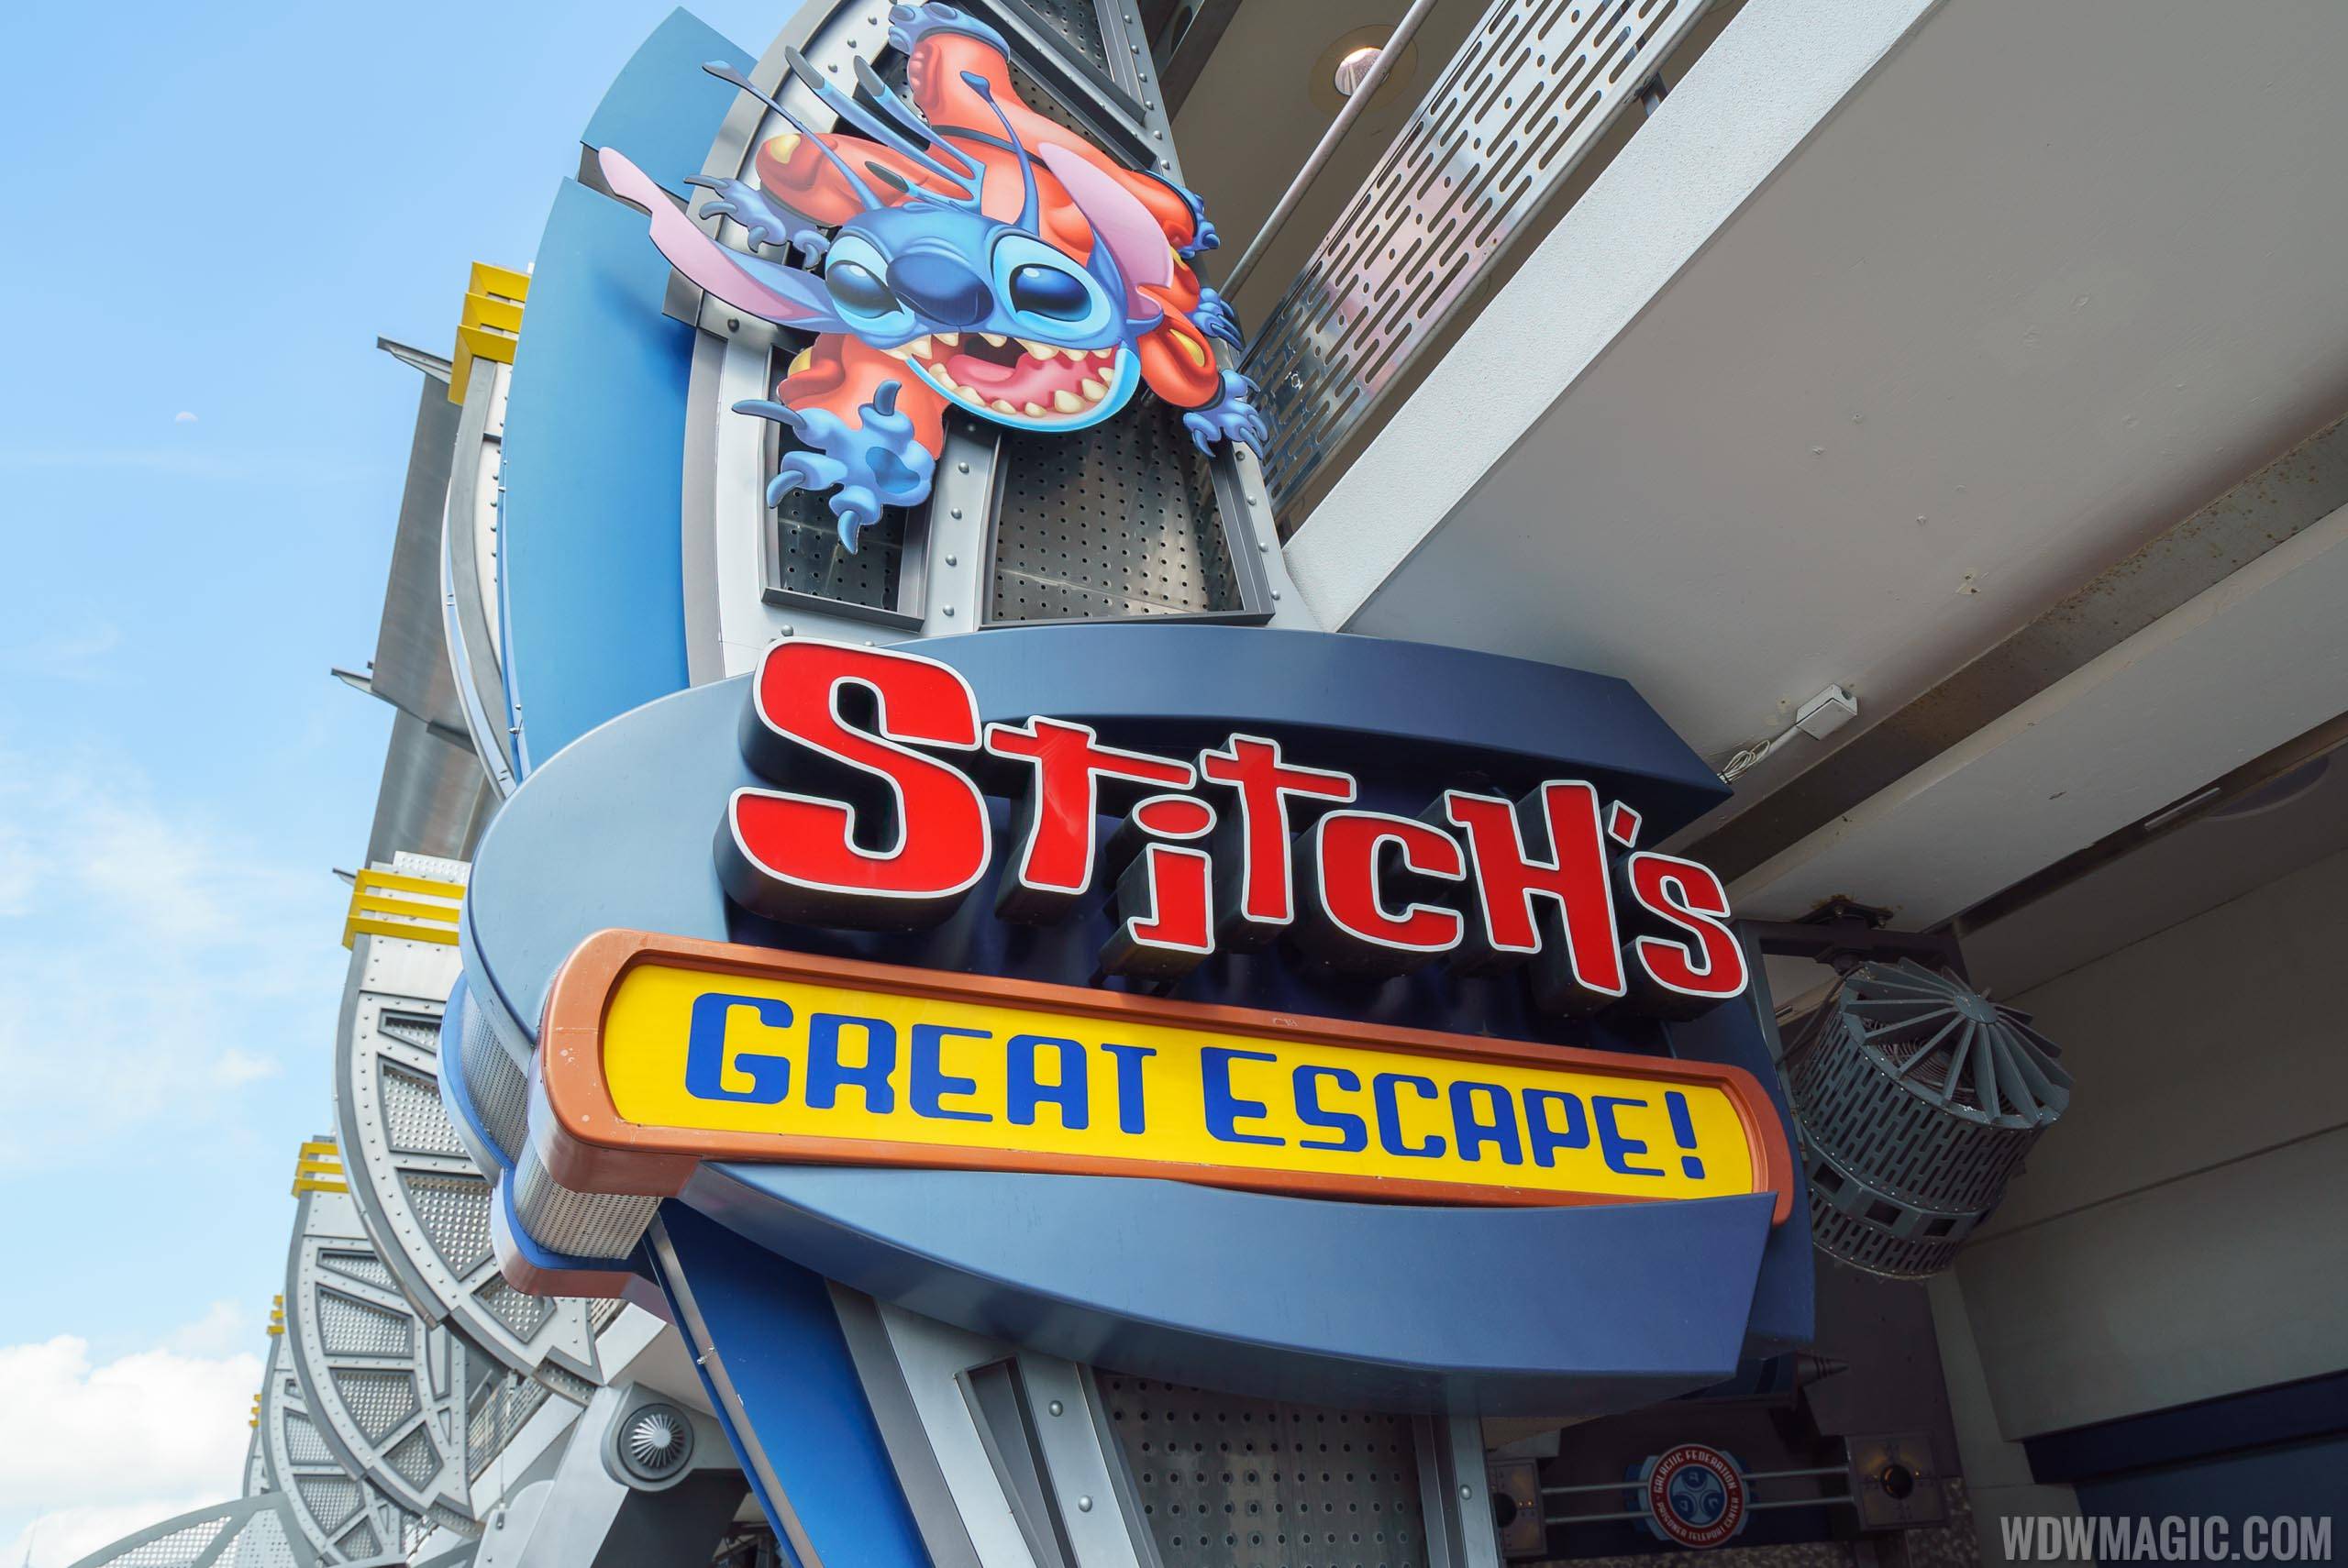 Stitch's Great Escape closed for two day refurbishment in March